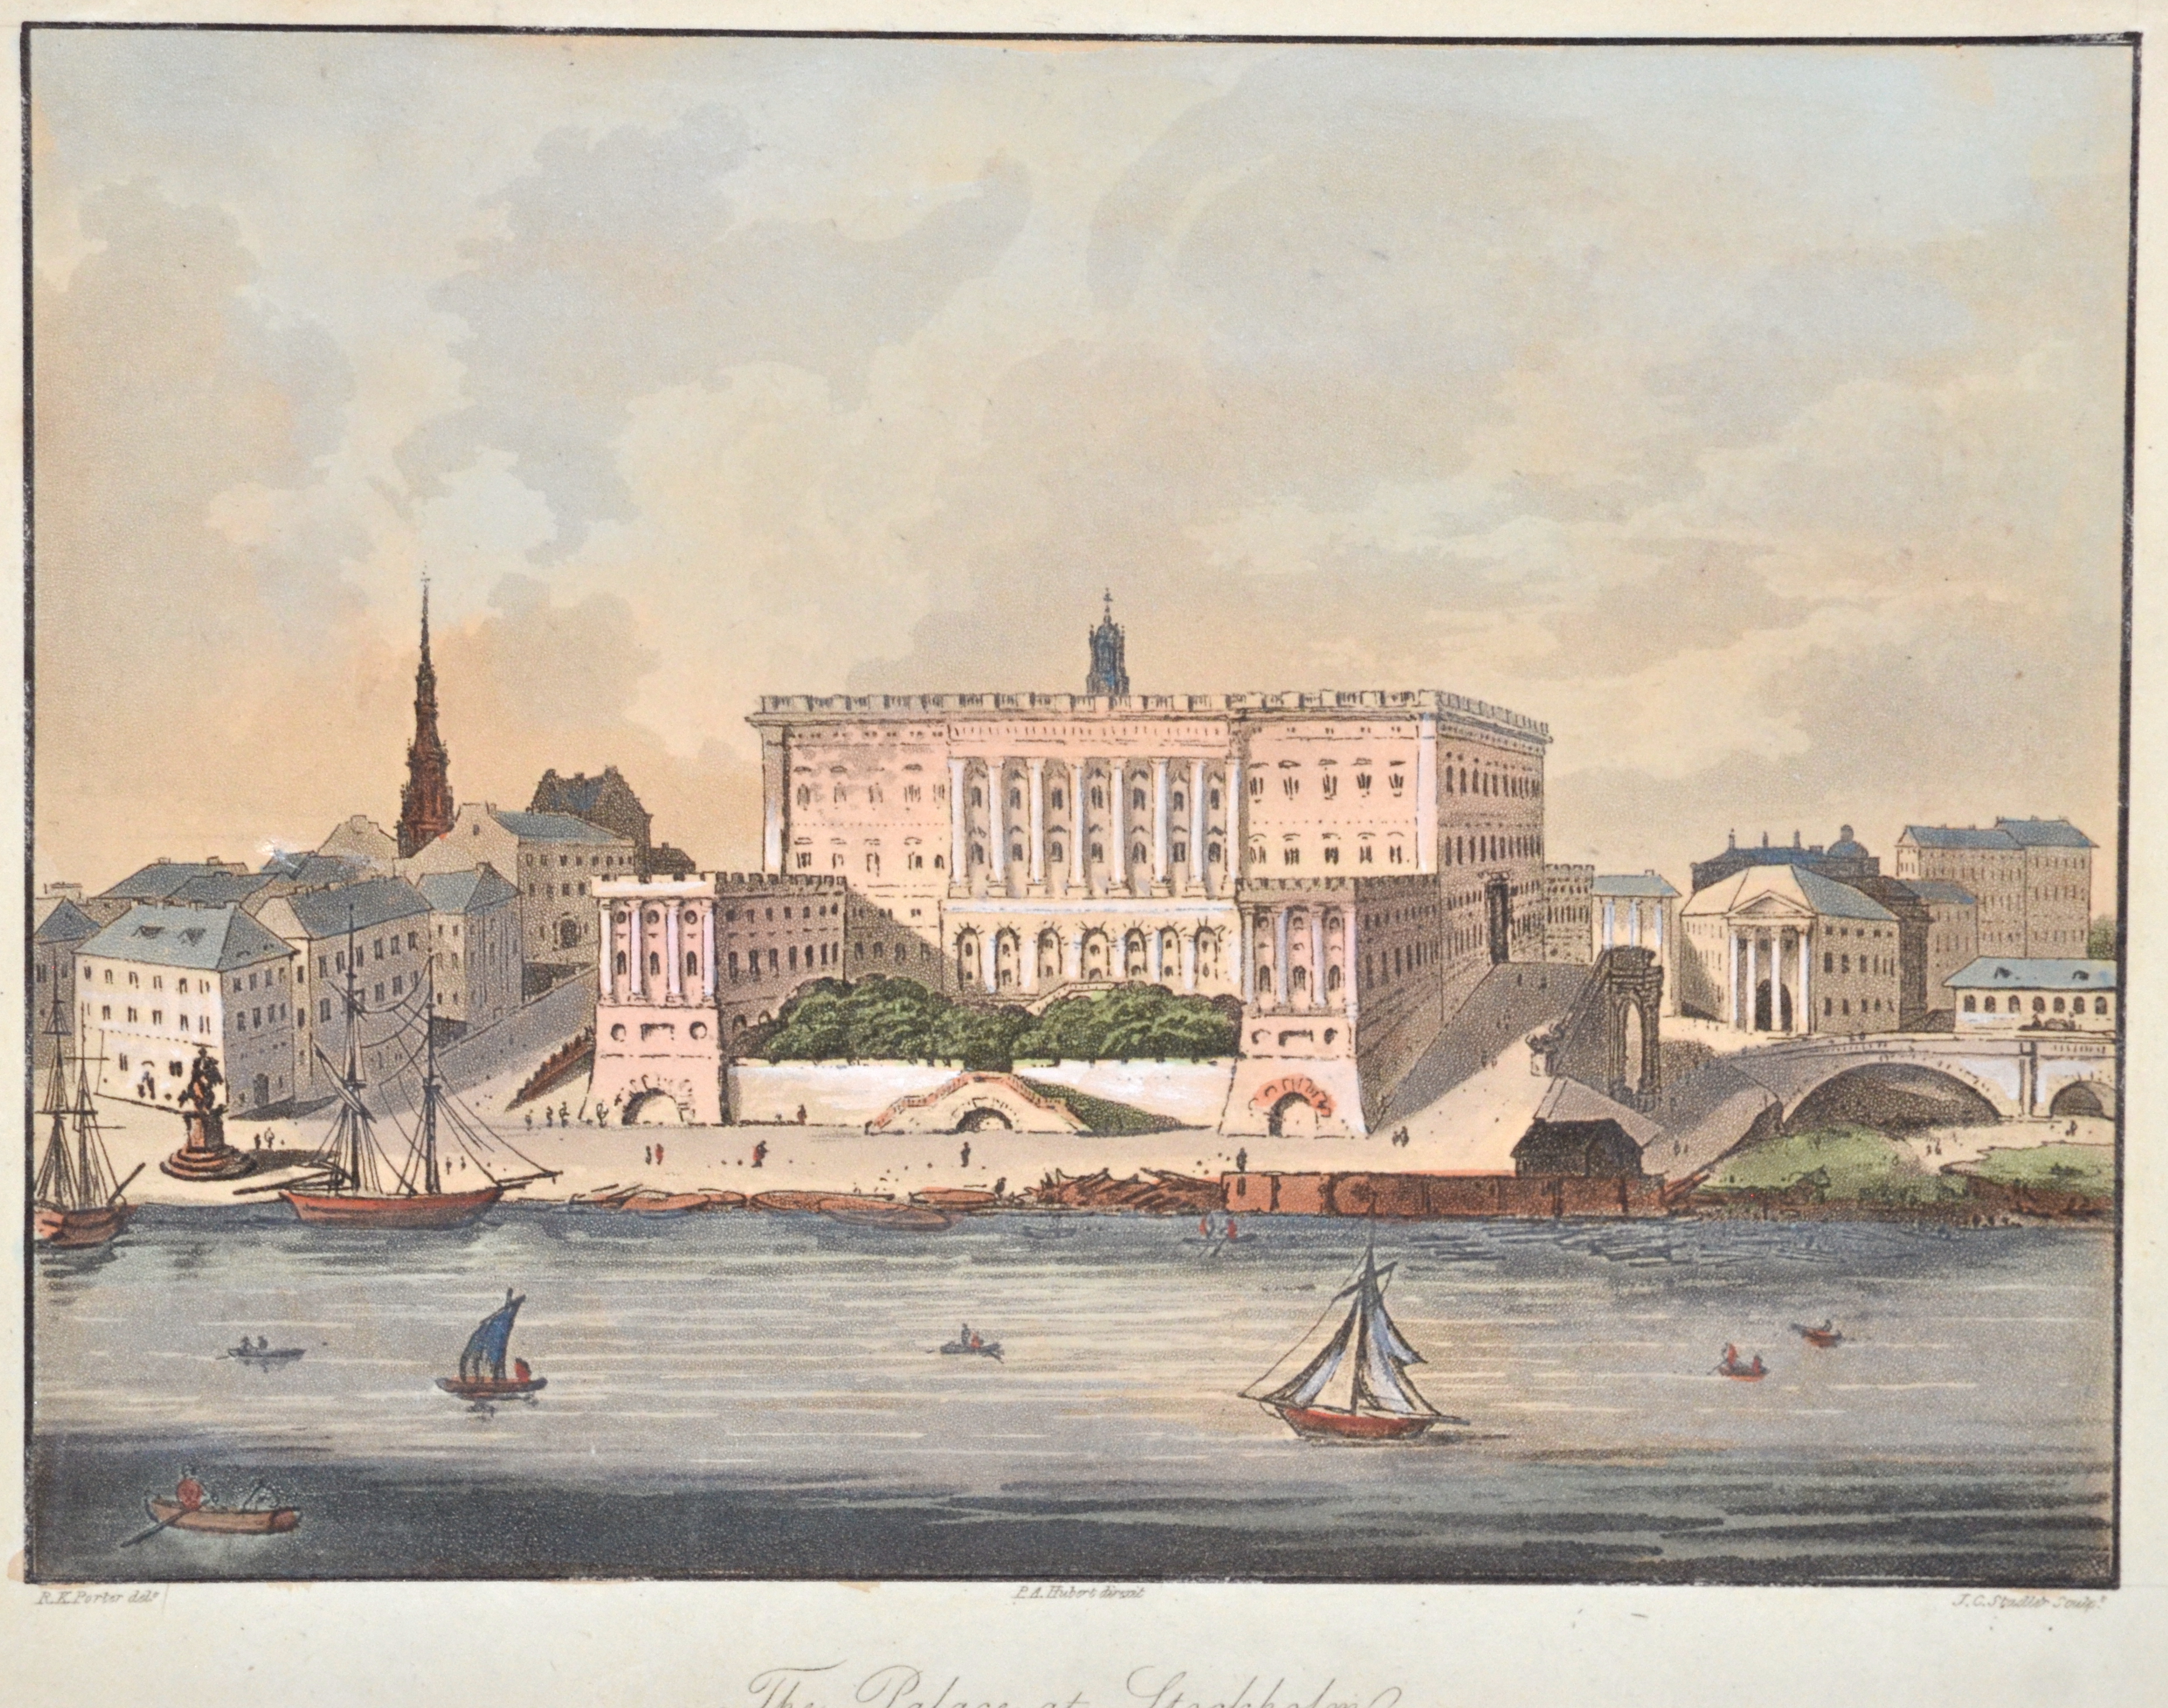 Stadler J.C. The Palace at Stockholm.